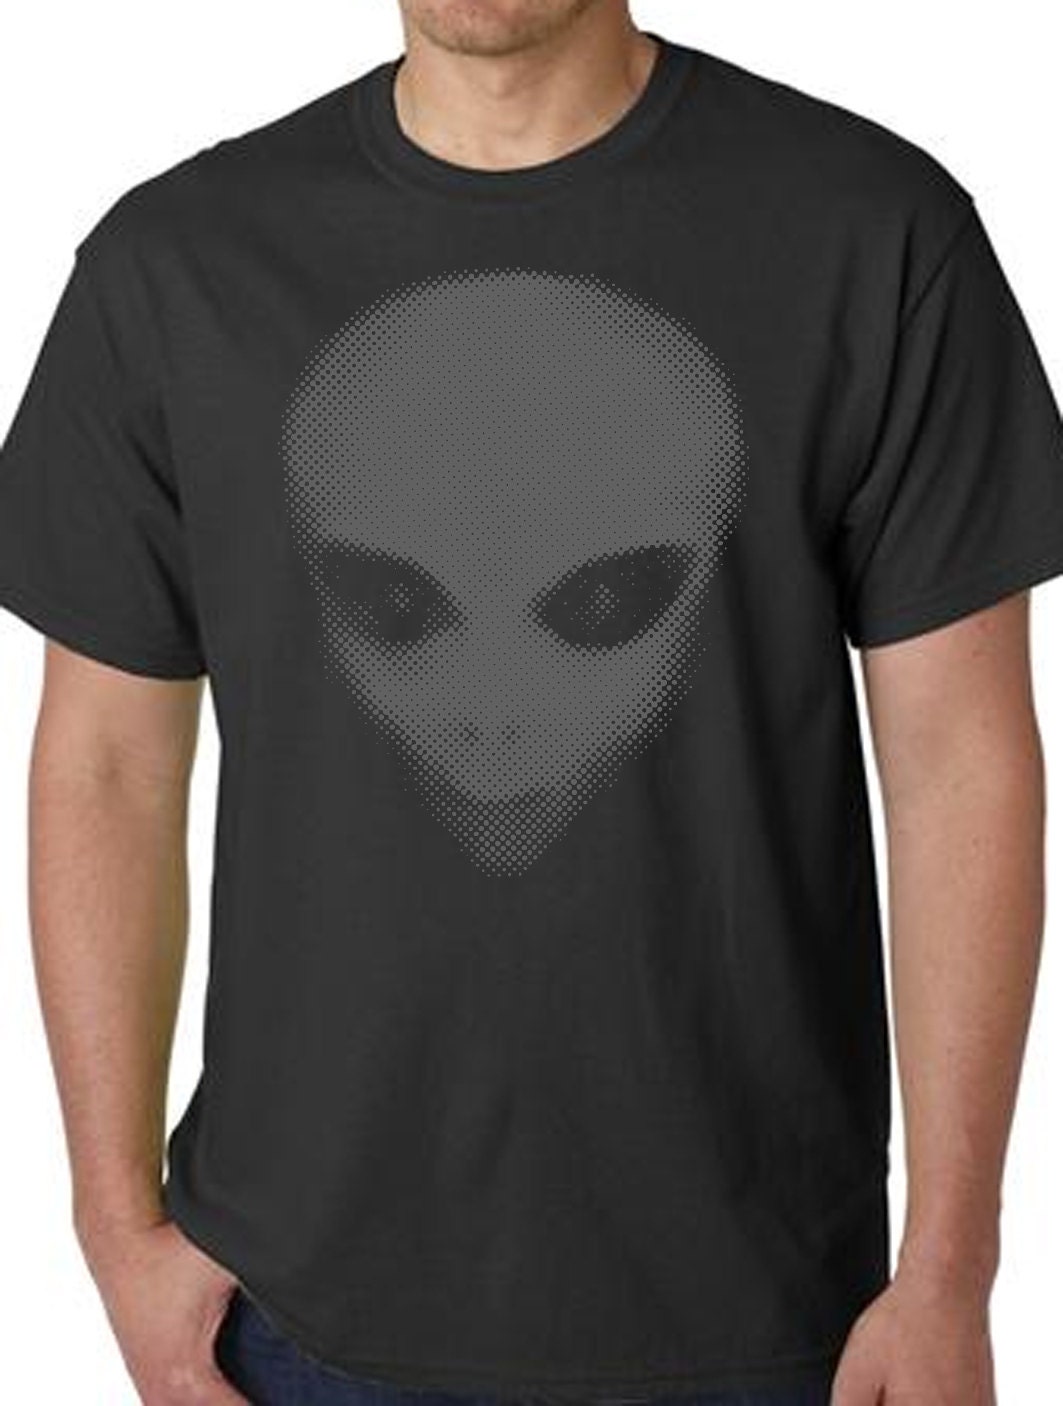 alien print t shirt